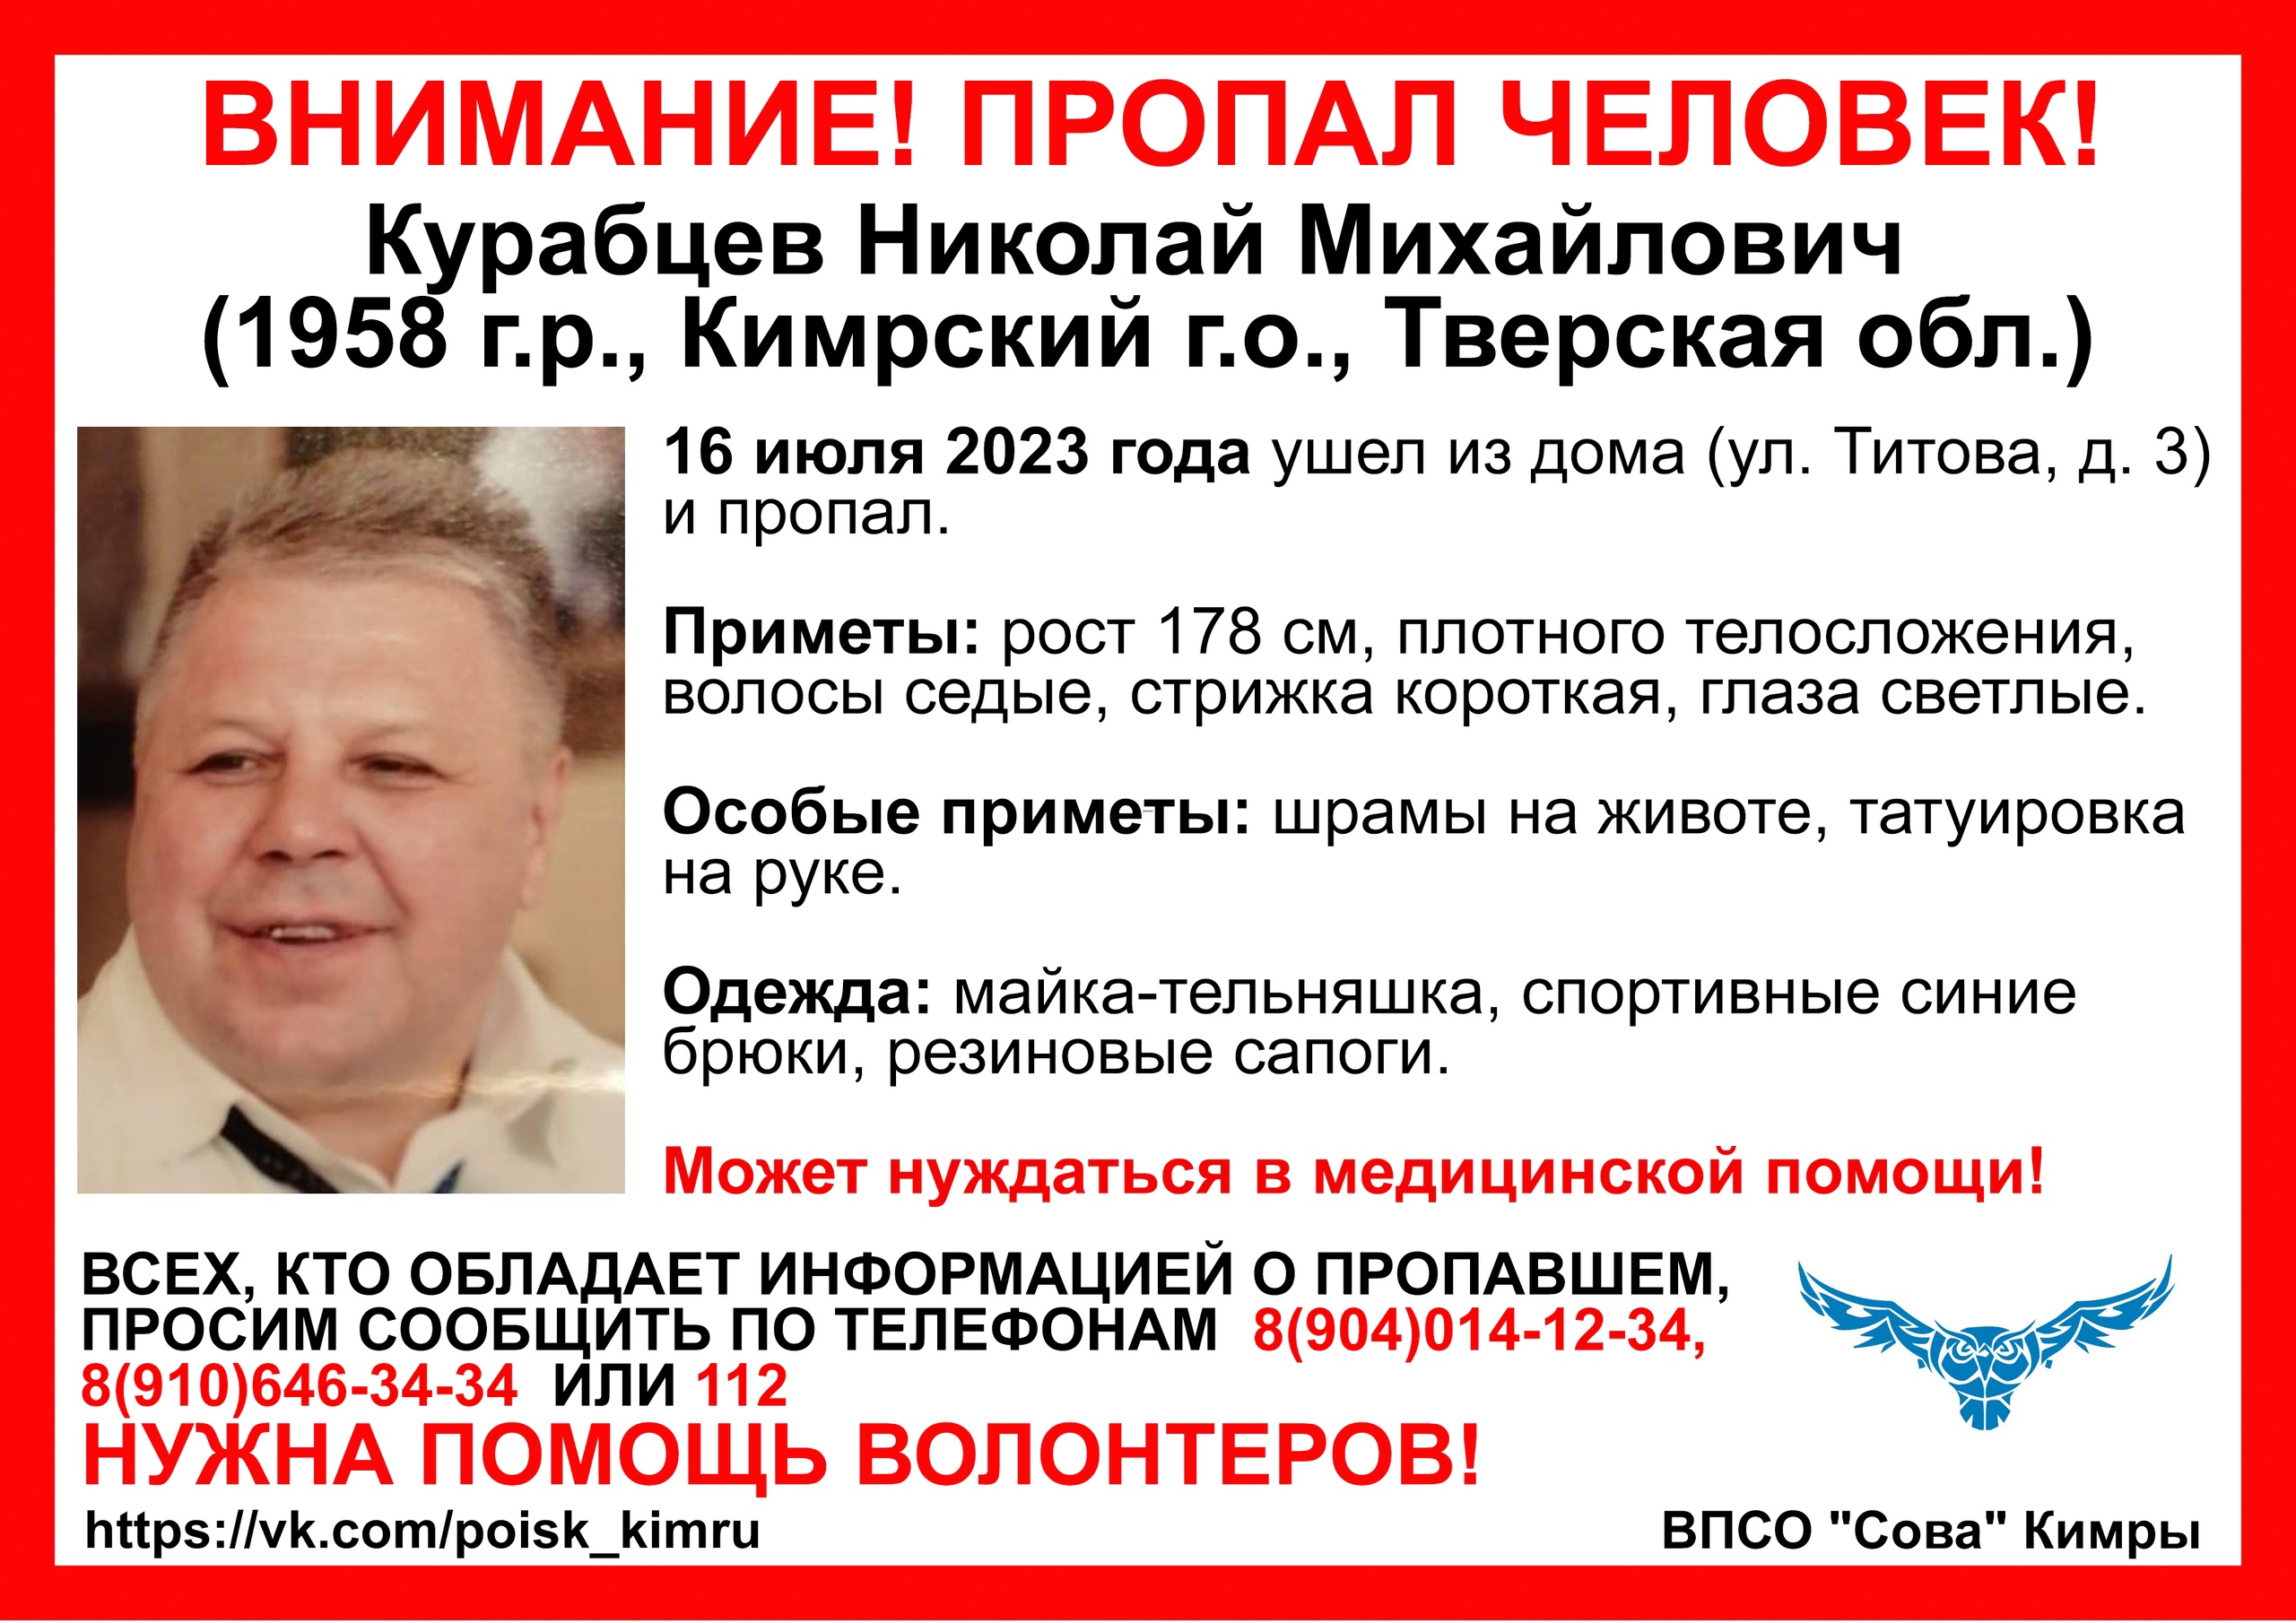 В Тверской области ищут мужчину в майке-тельняшке